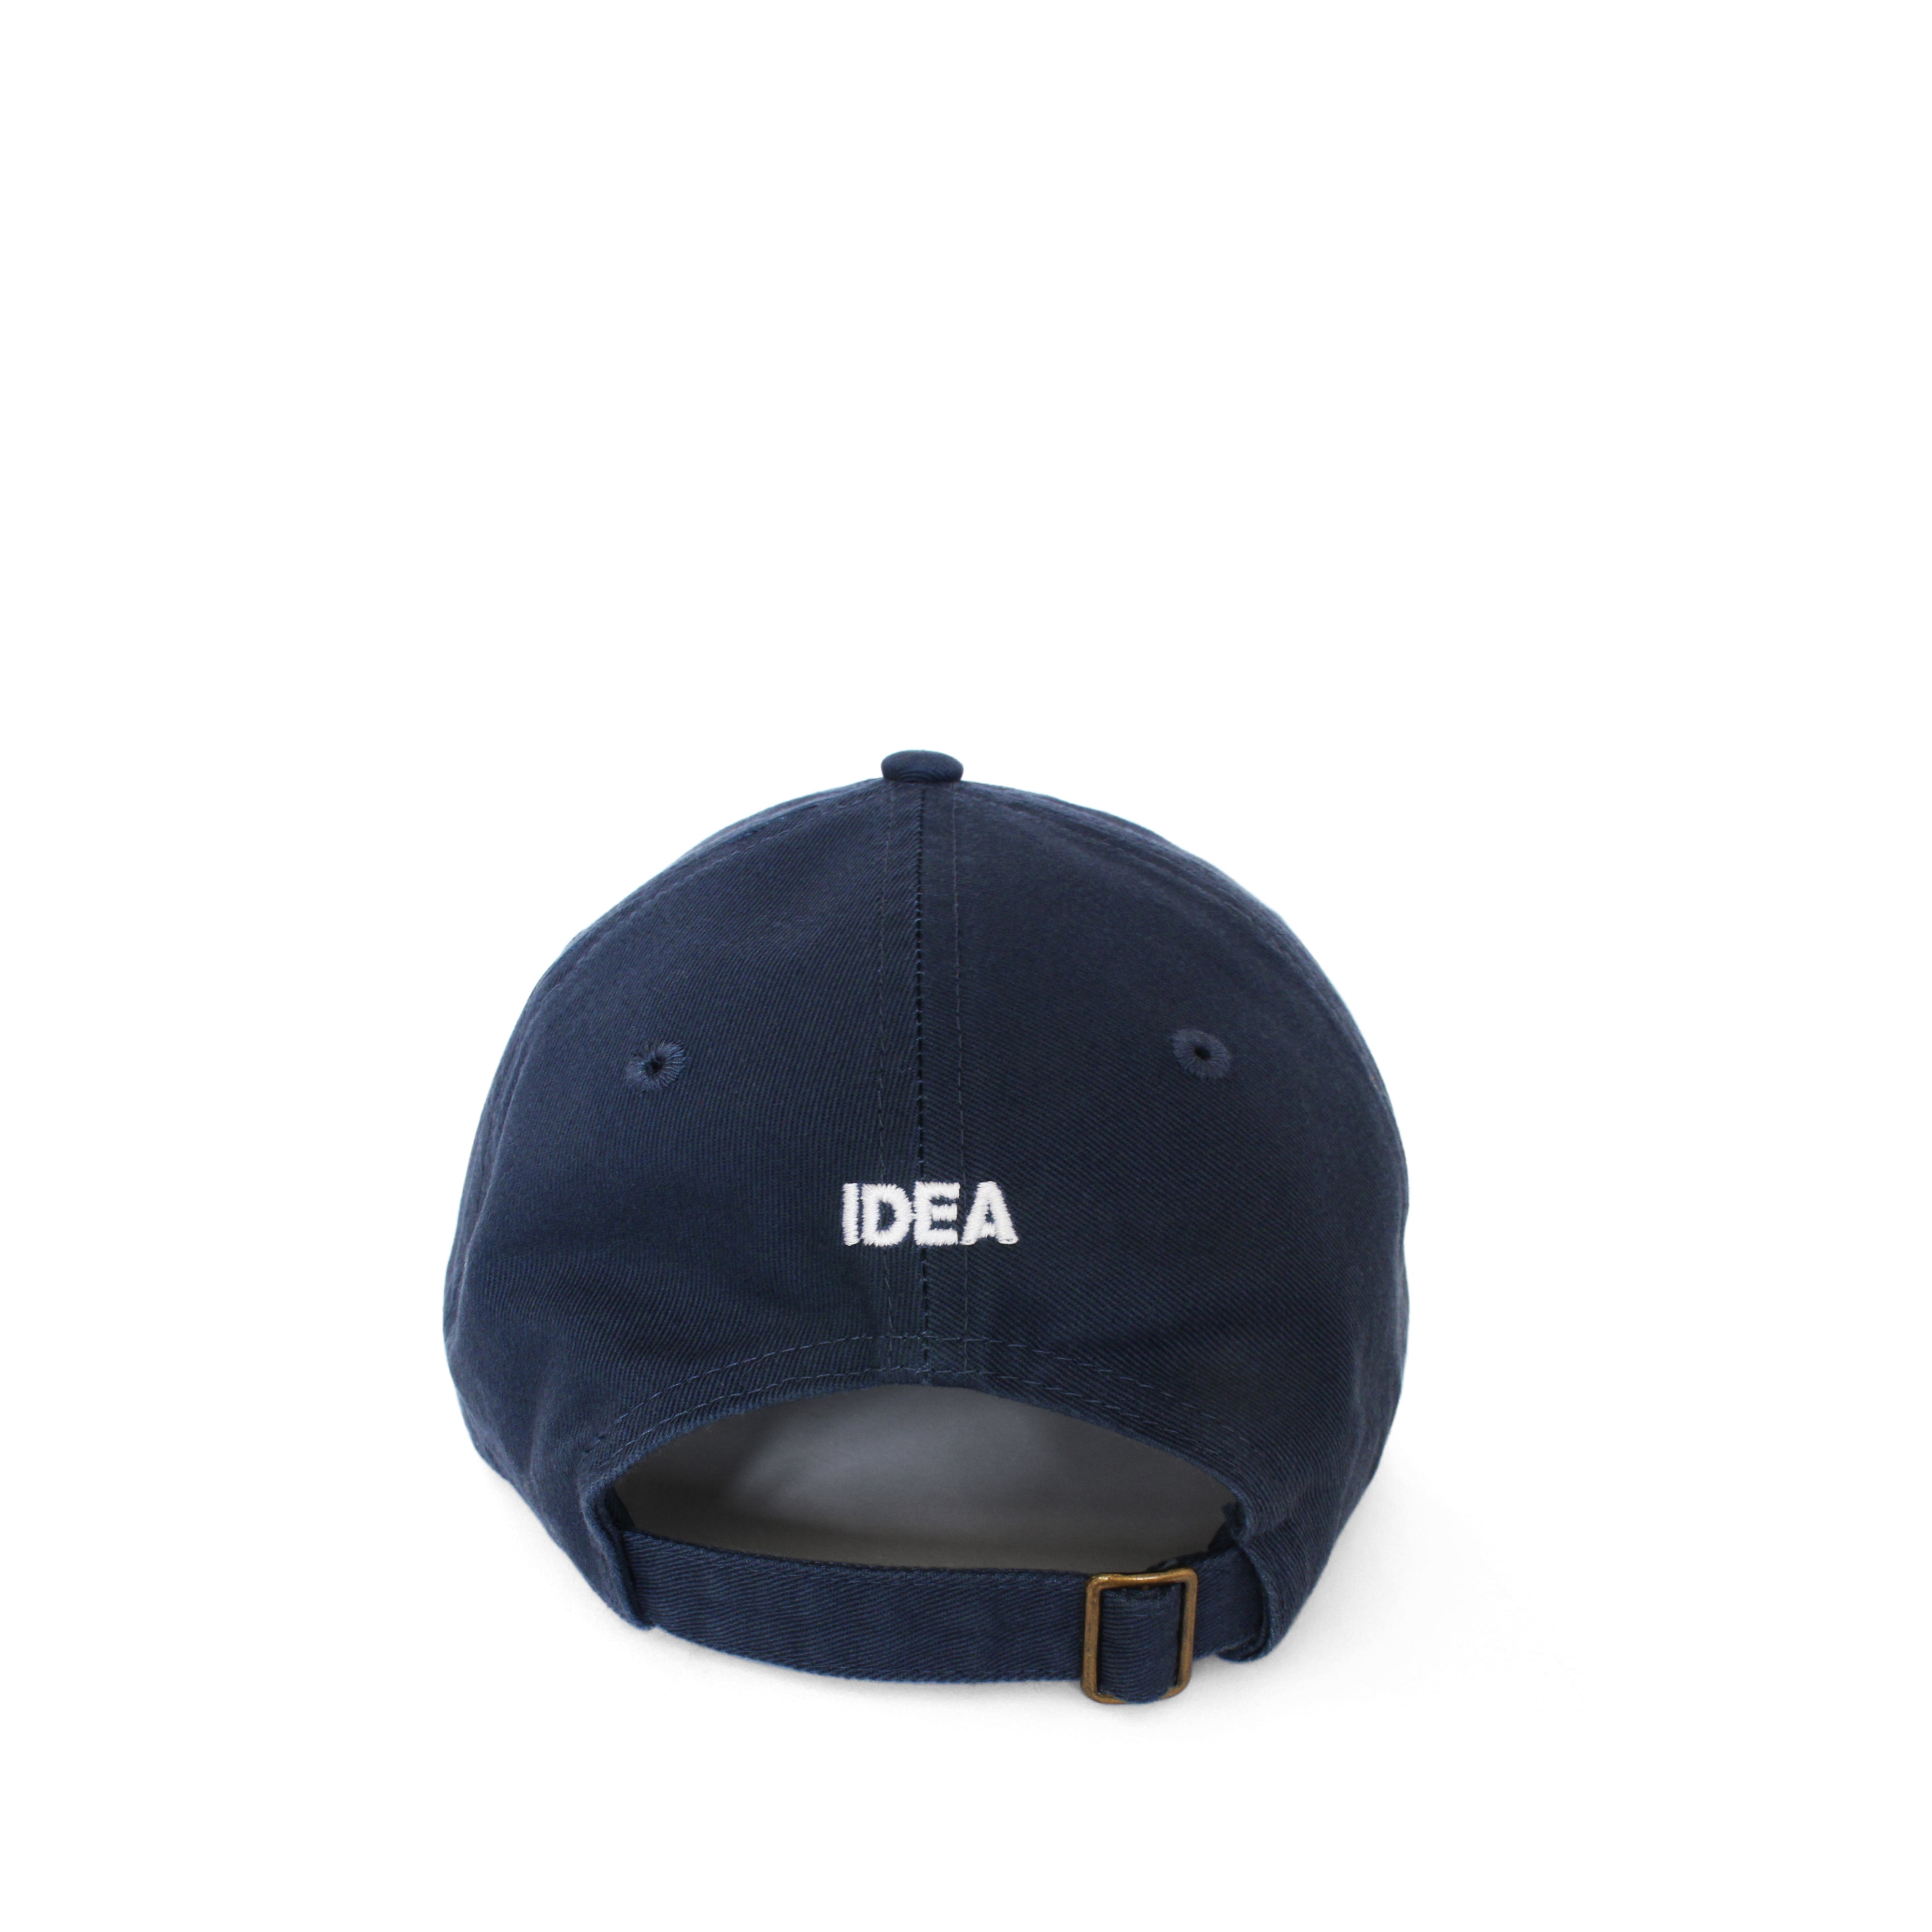 IDEA - Winona Hat - (Navy)